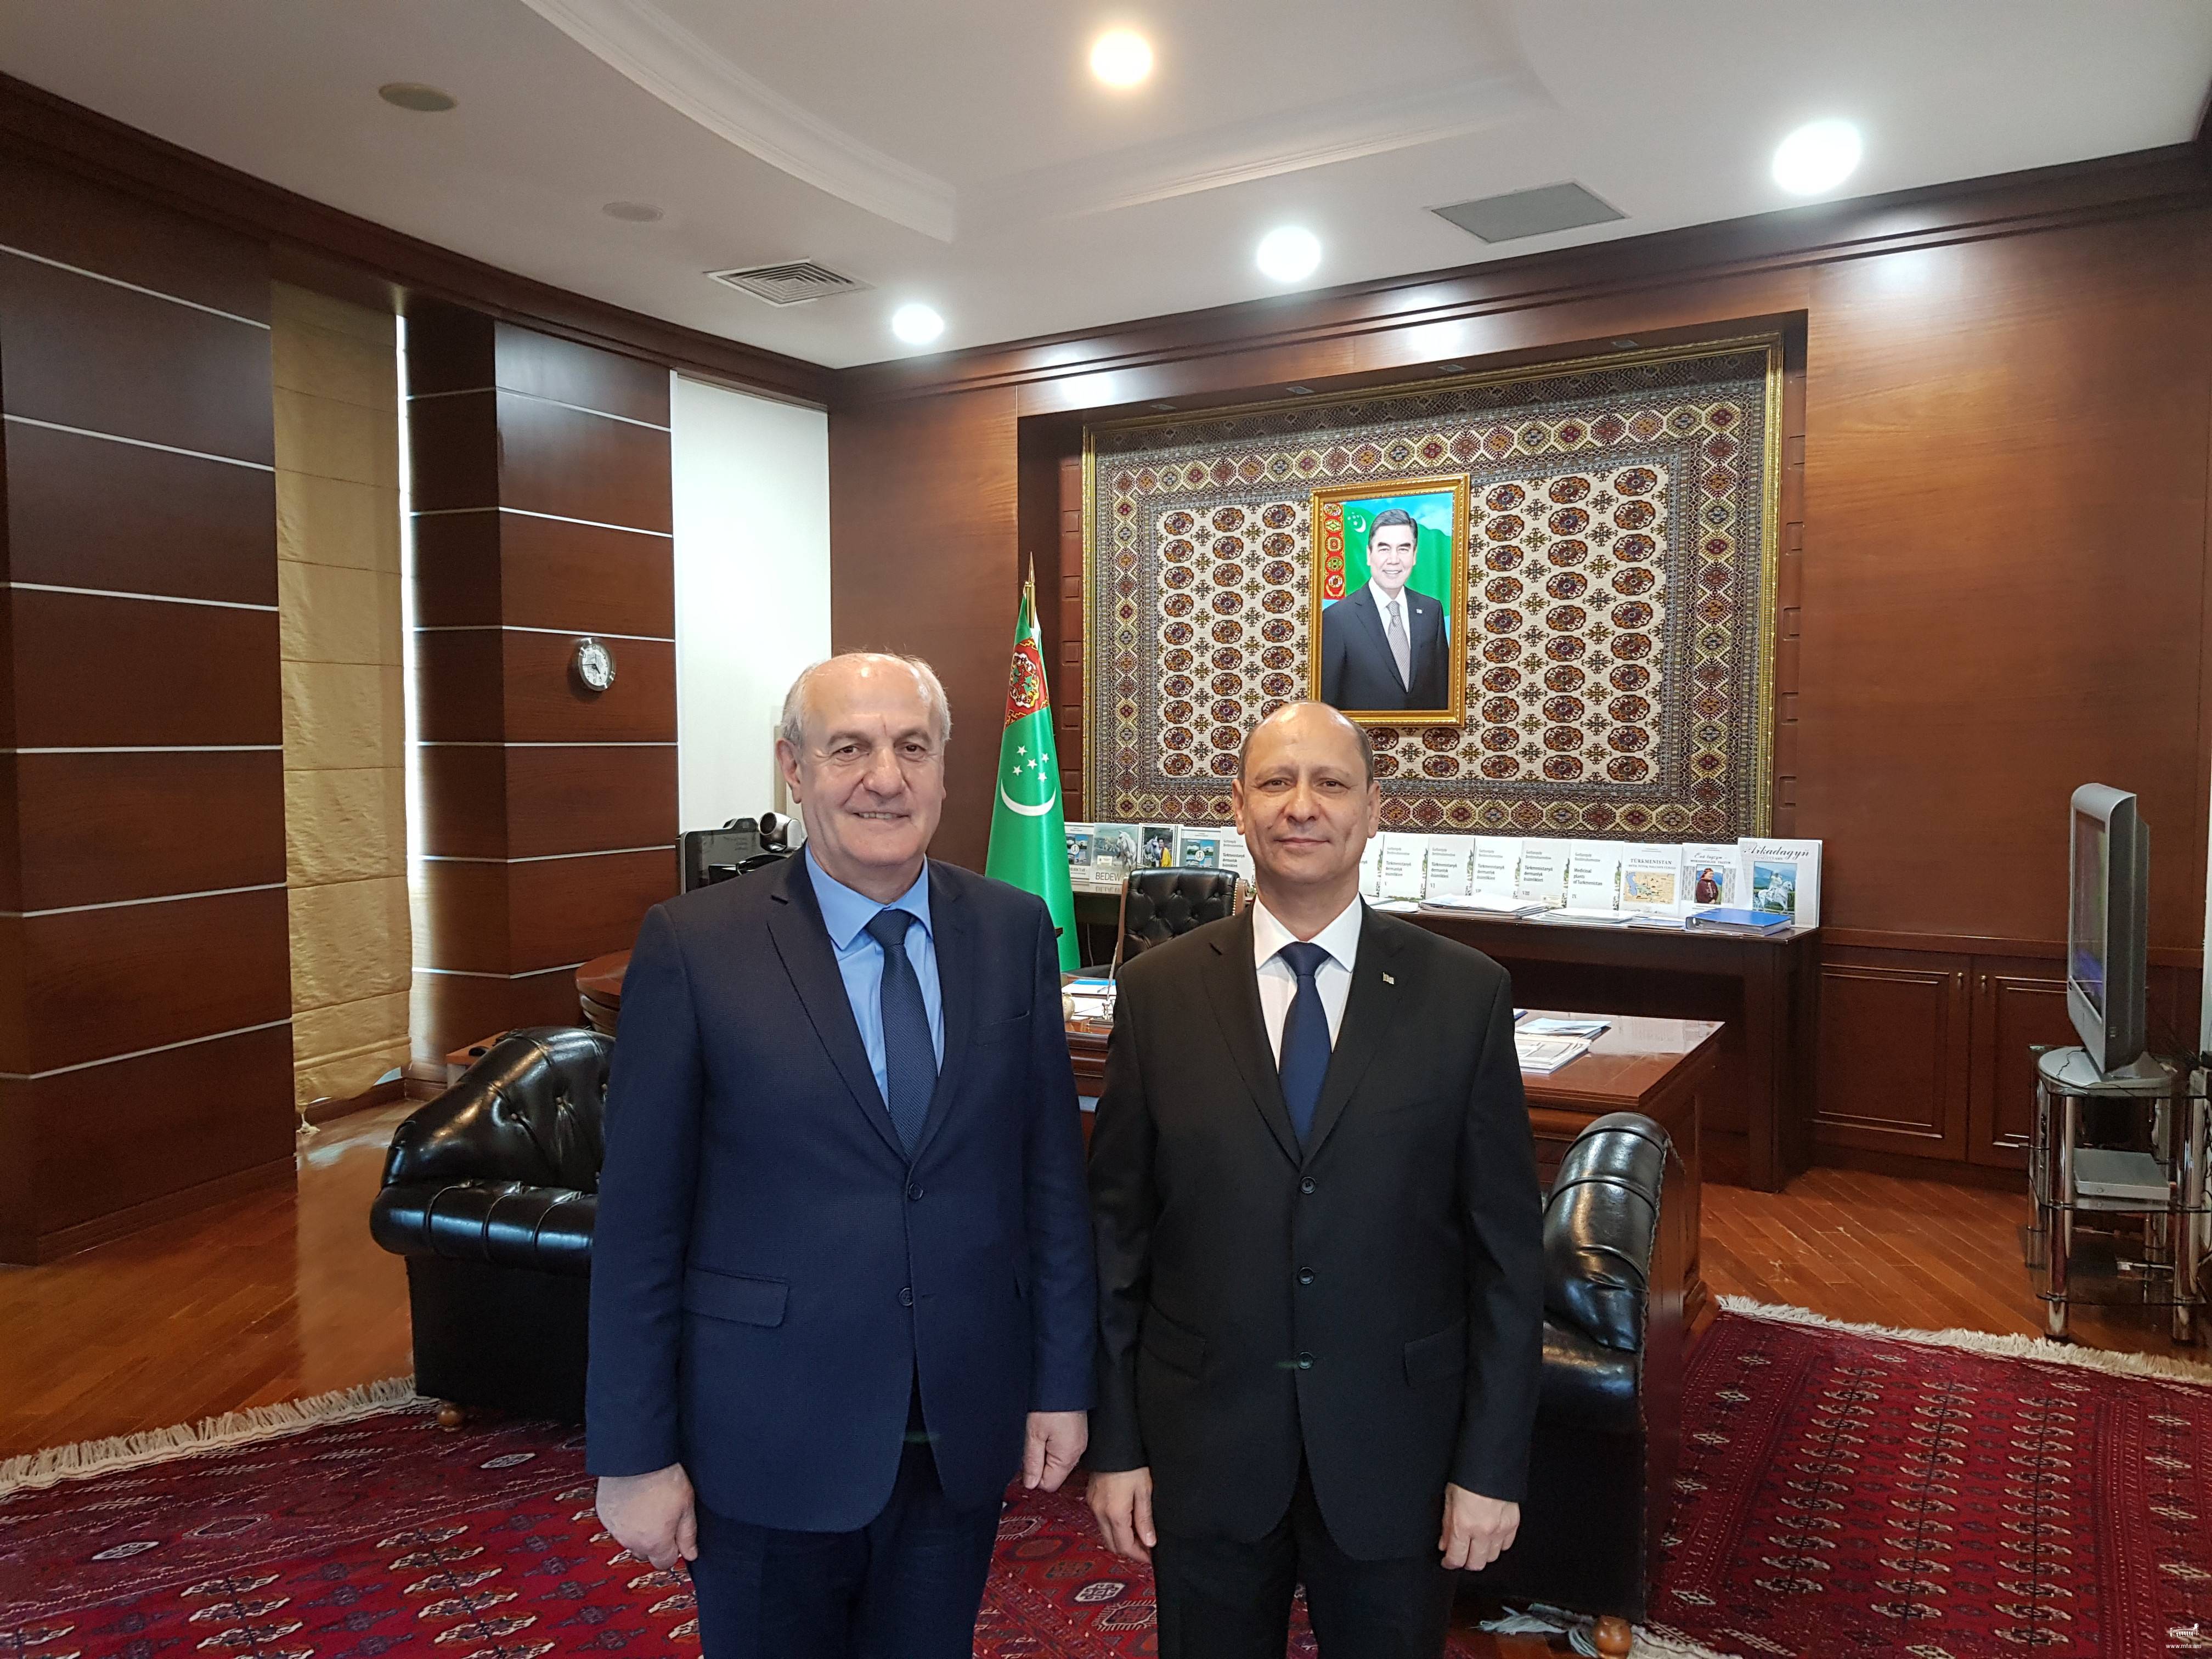 Դեսպան Բադալյանի հանդիպումը Թուրքմենստանի առողջապահության և բժշկական արդյունաբերության նախարարի հետ